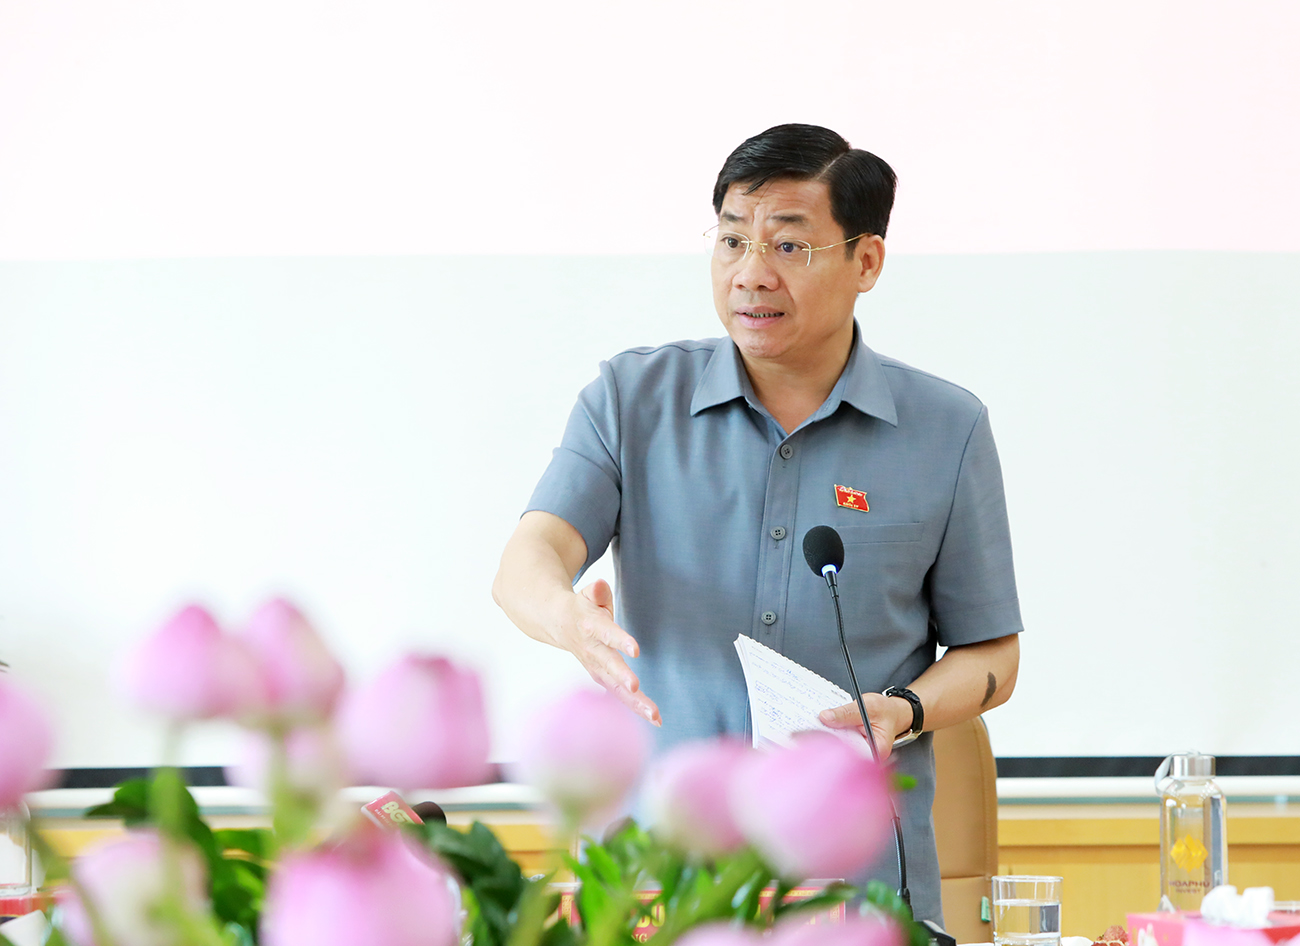 Đoàn đại biểu Quốc hội tỉnh Bắc Giang khảo sát tình hình đầu tư, sản xuất kinh doanh tại Khu công nghiệp Hòa Phú